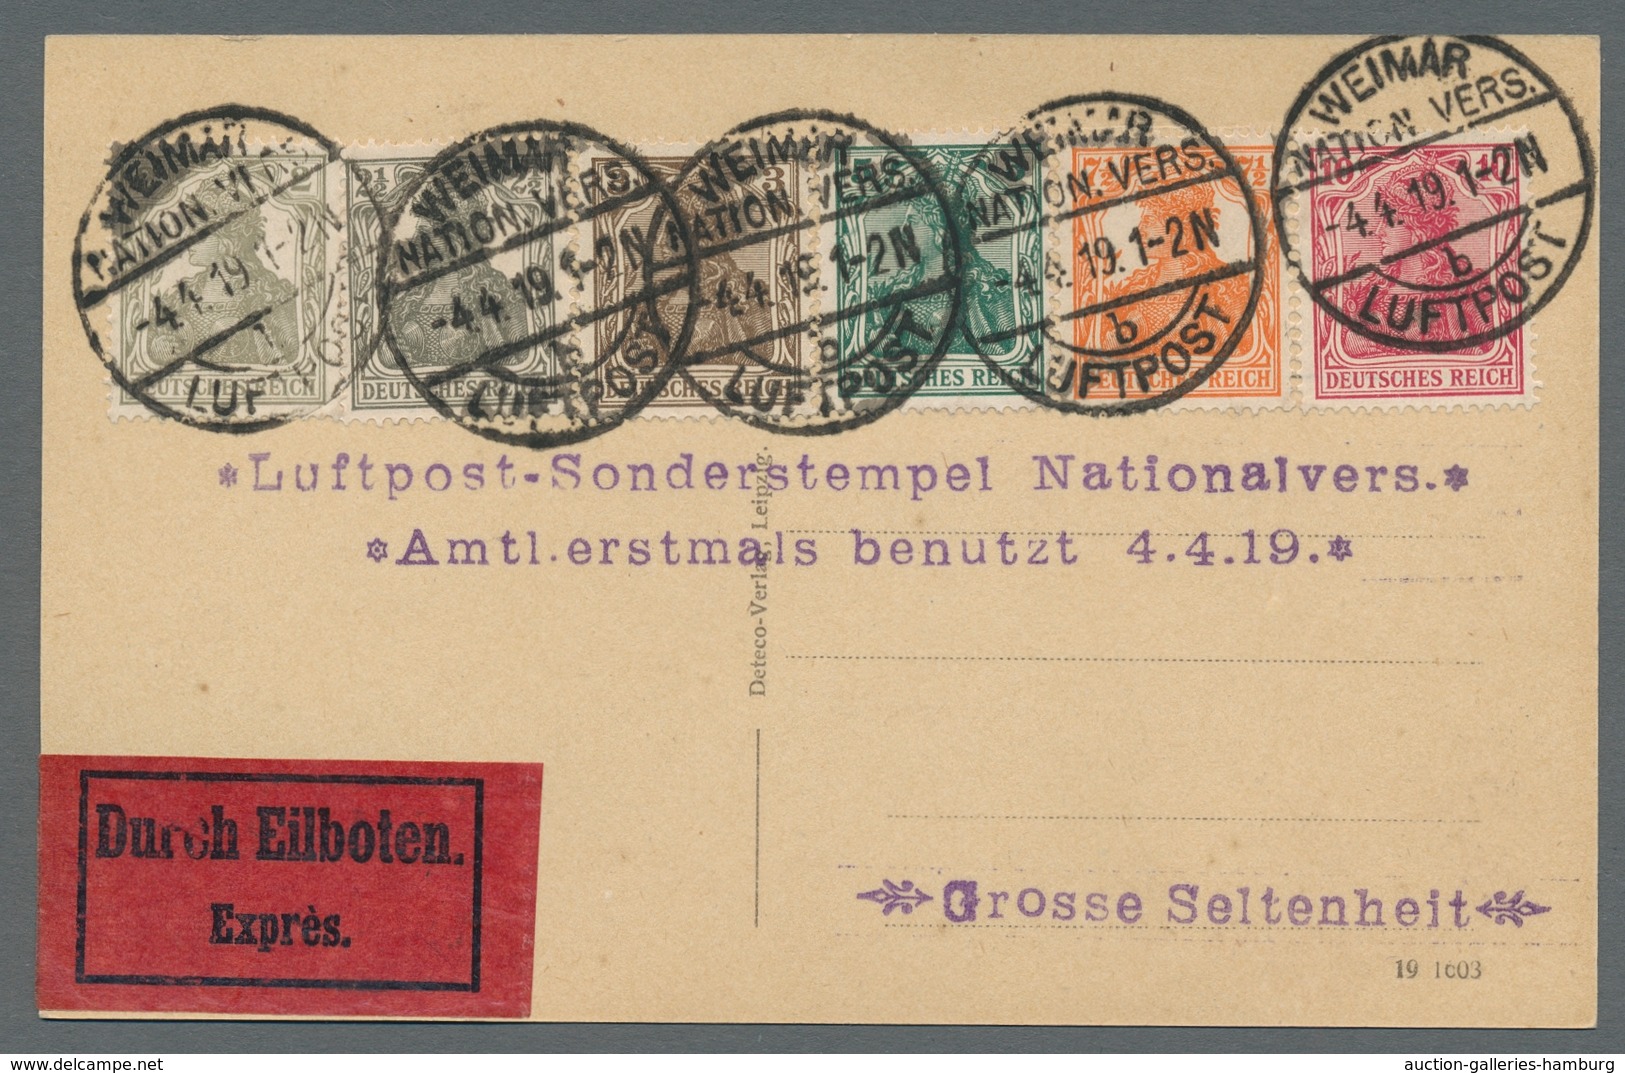 Deutsches Reich - Inflation: 1919, "Nationalversammlung", Offizieller Gelegenheitsstempel Zur Verans - Covers & Documents